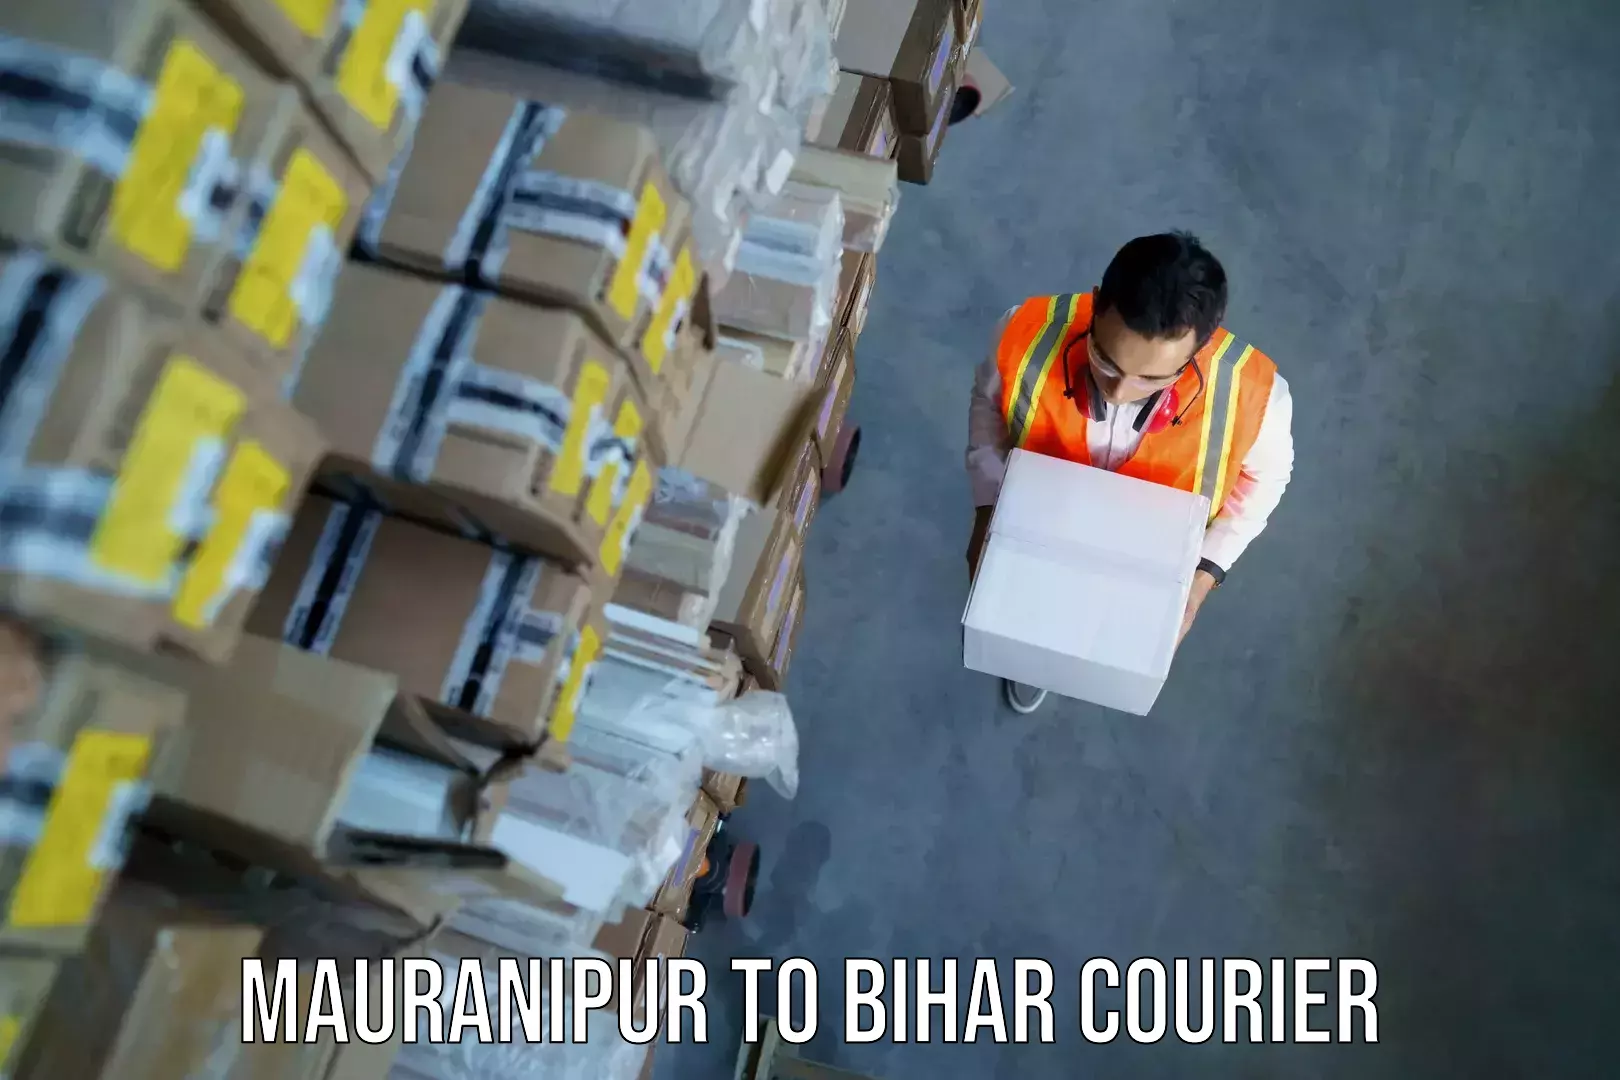 Baggage courier guide Mauranipur to Saraiya